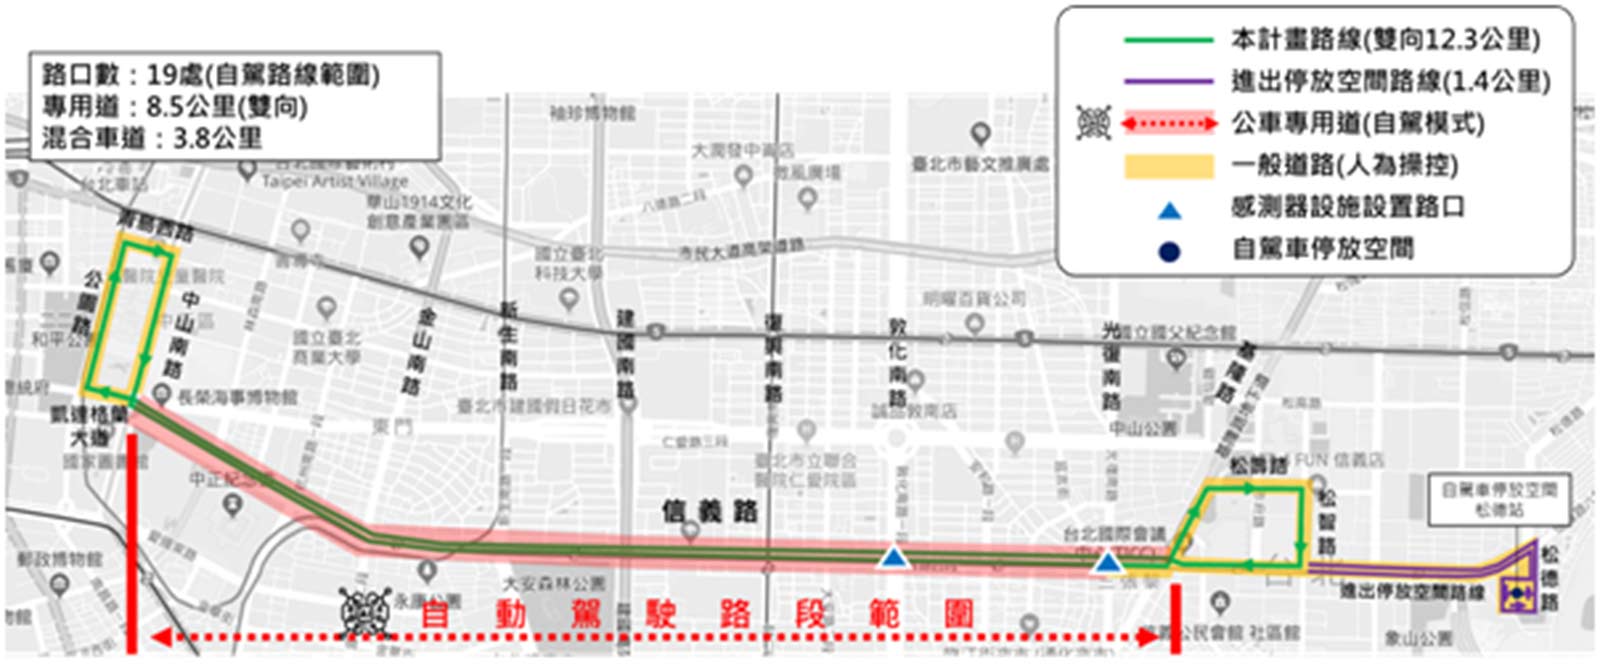 台北市自駕公車的夜間測試路線。